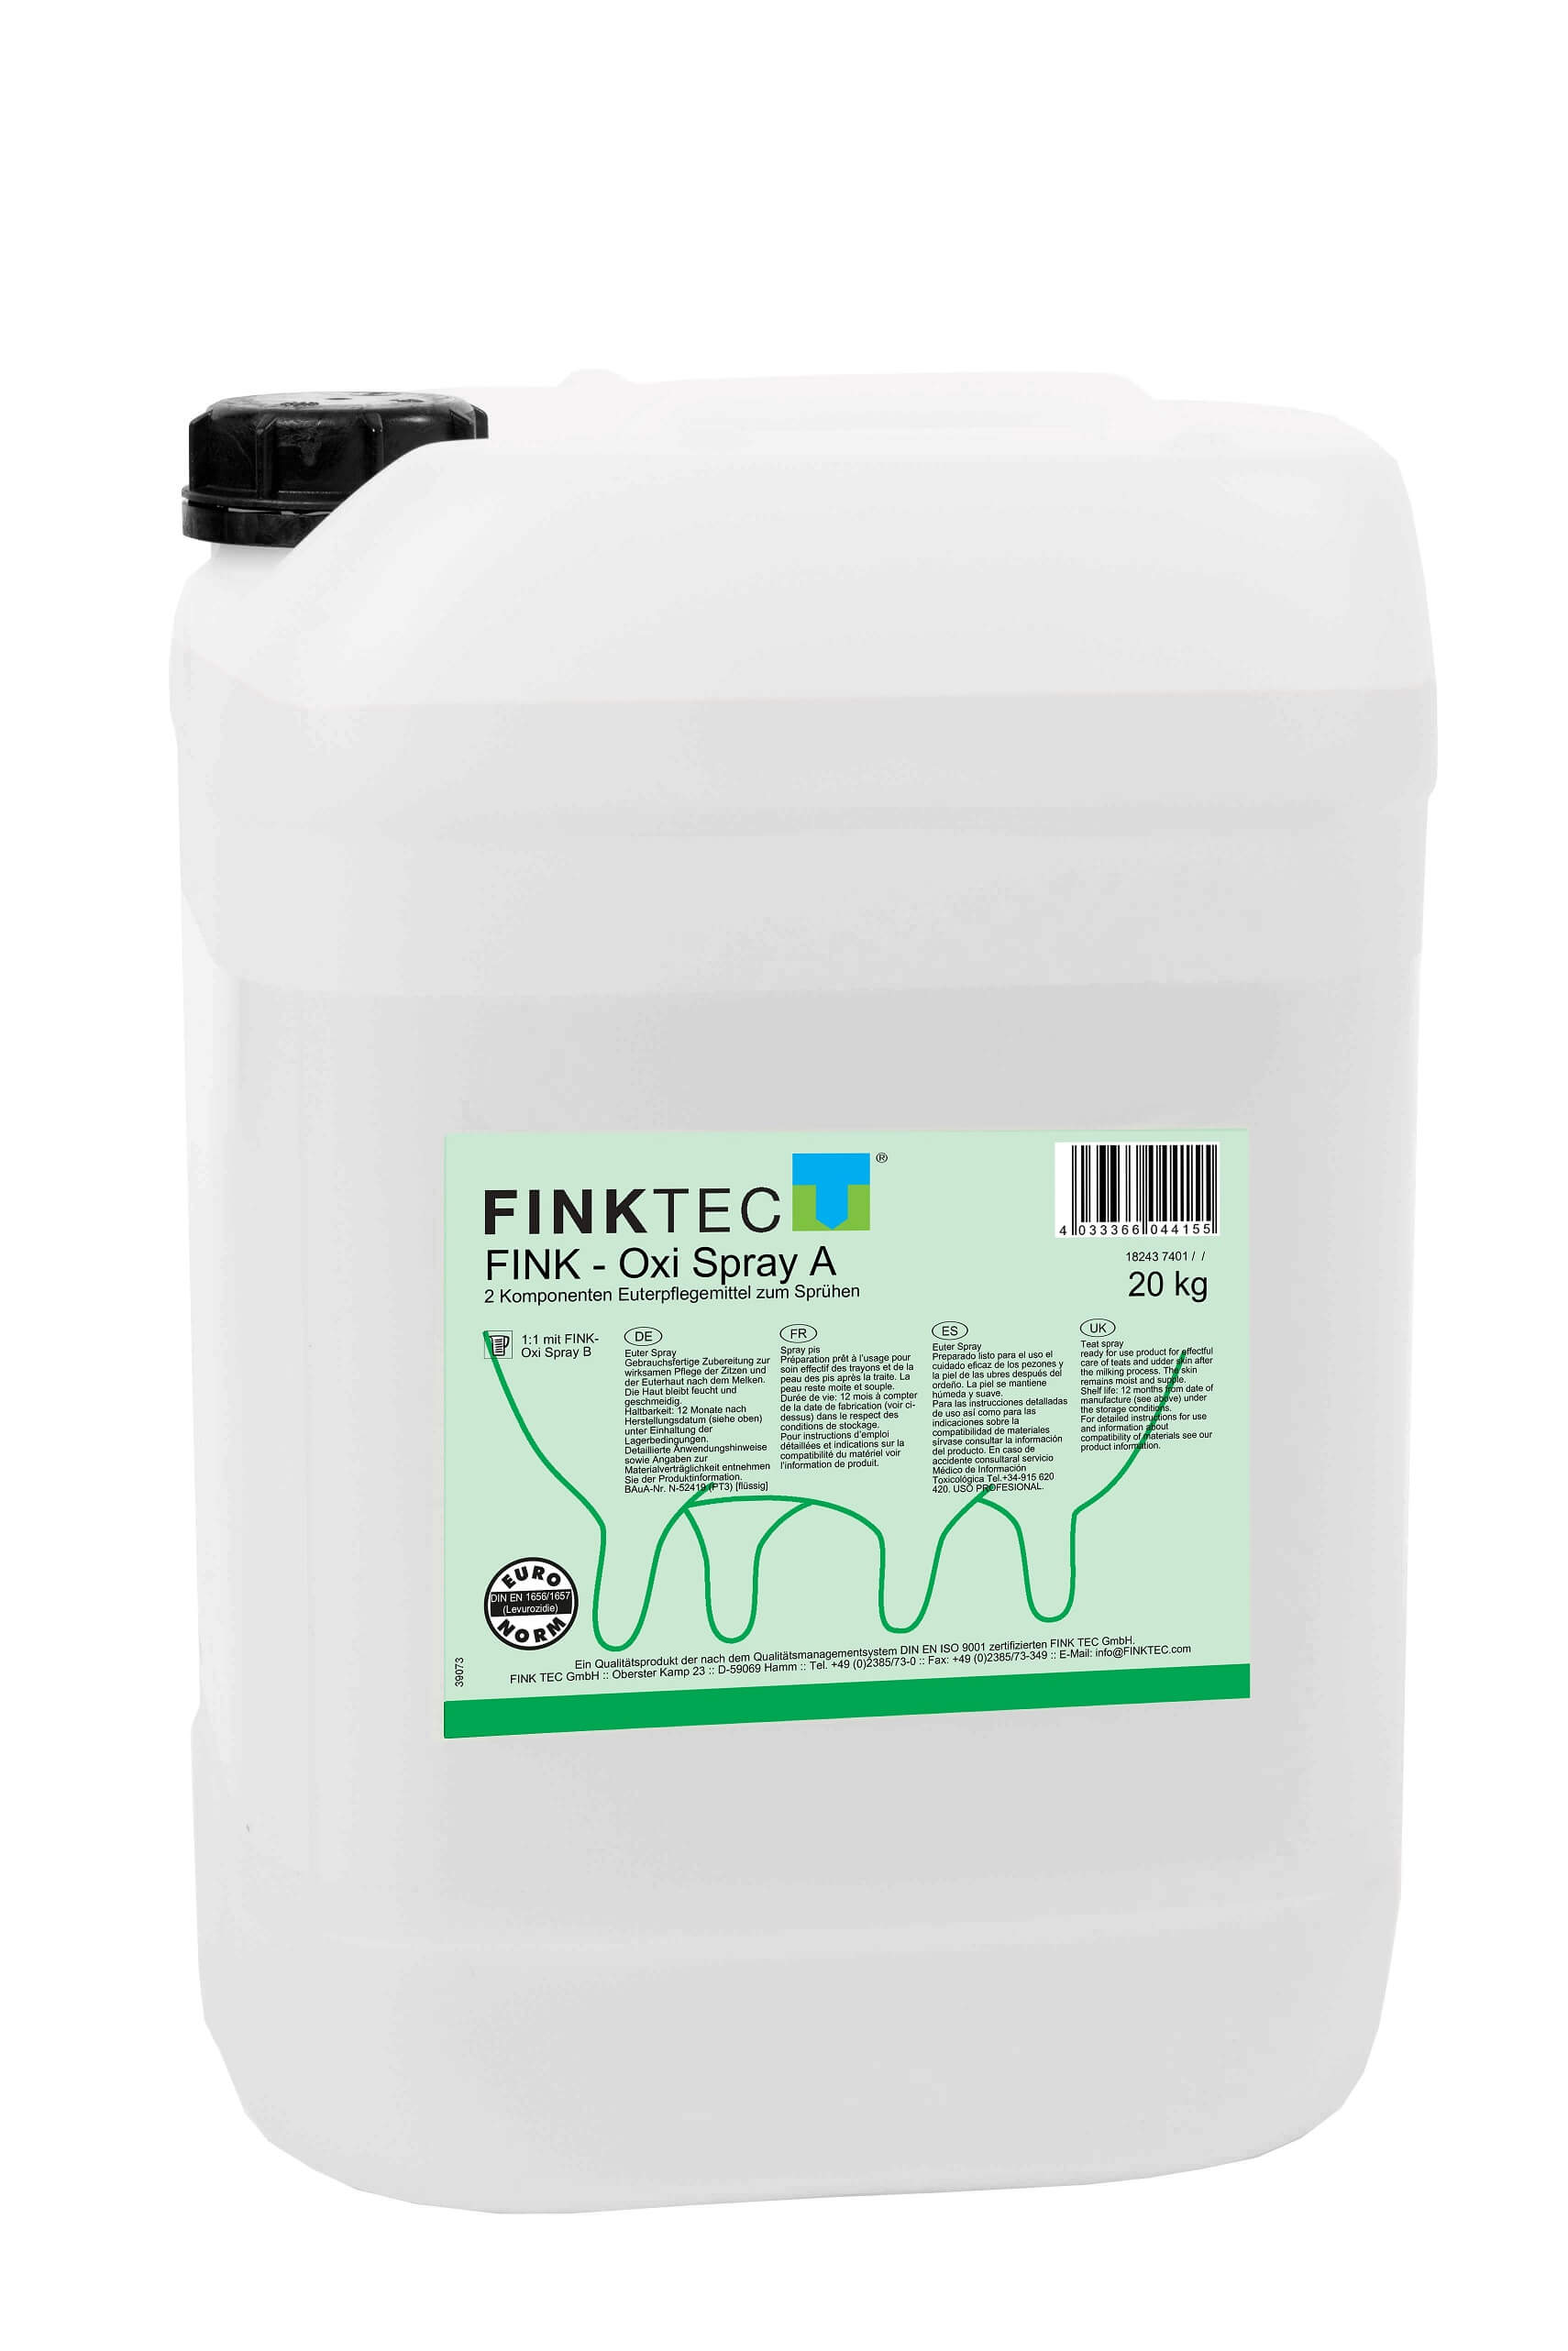 FINKTEC Oxi Spray A - 20 kg